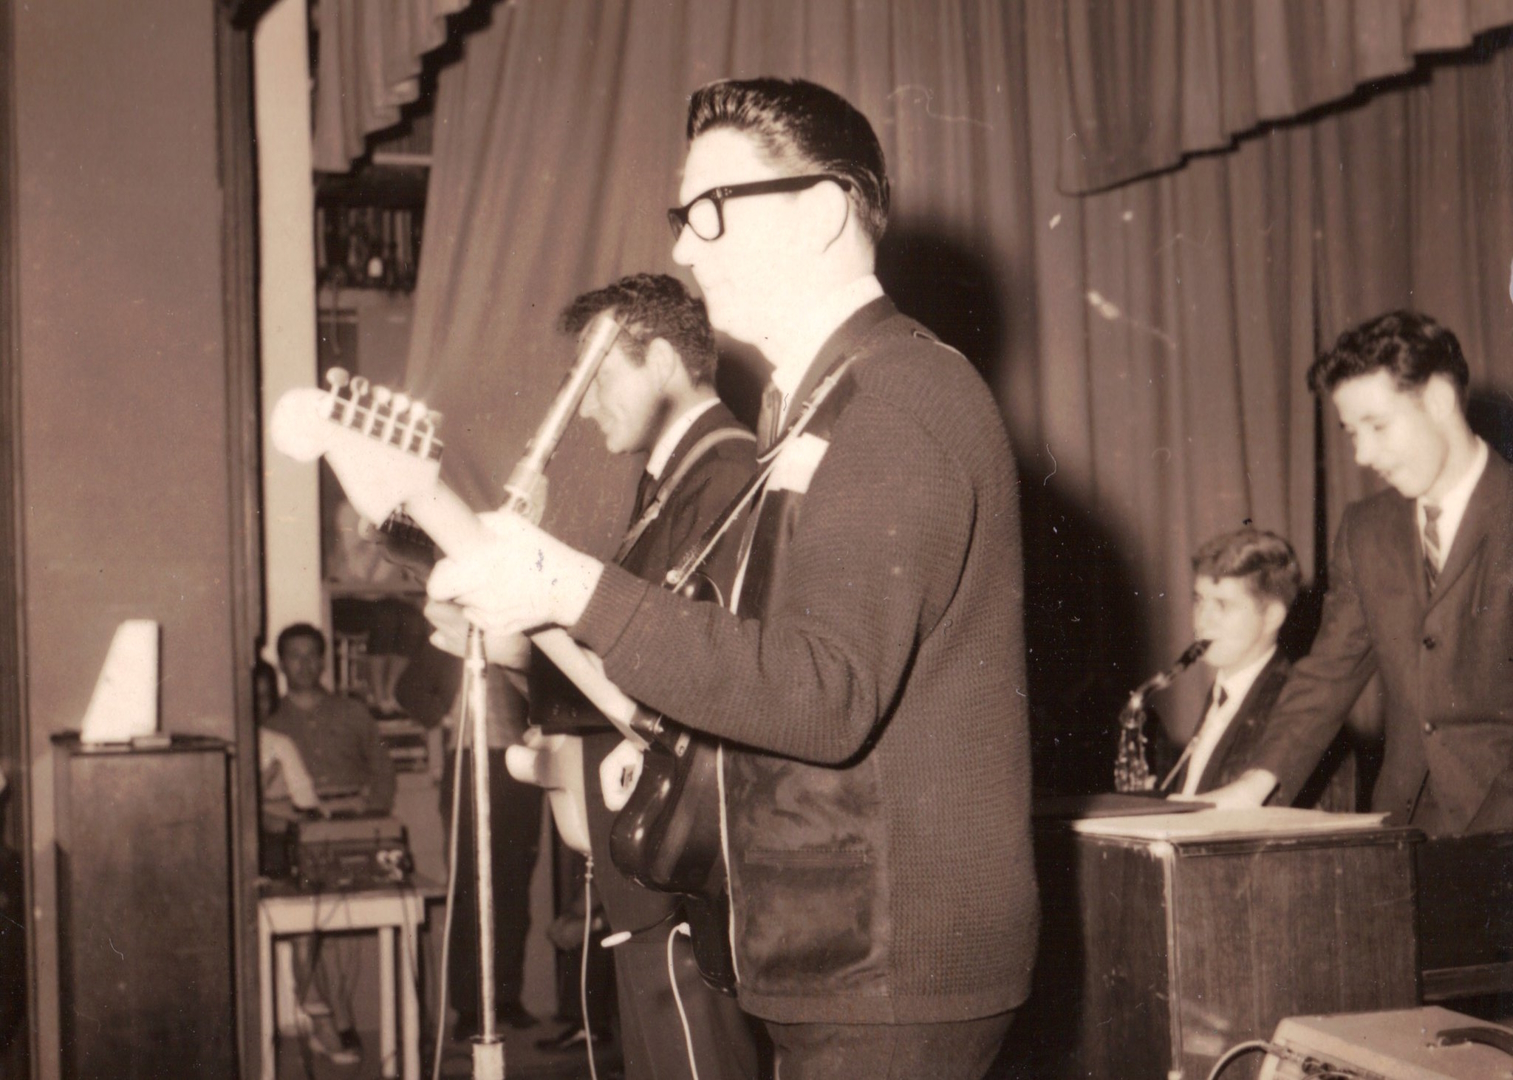 Концерт Роя Орбисона во Флориде, 1961 год. На заднем плане можно заметить комбоусилители и юнитное оборудование. Источник фото: Roy Orbison by Wayne Dilger, лицензия CC 2.0.  